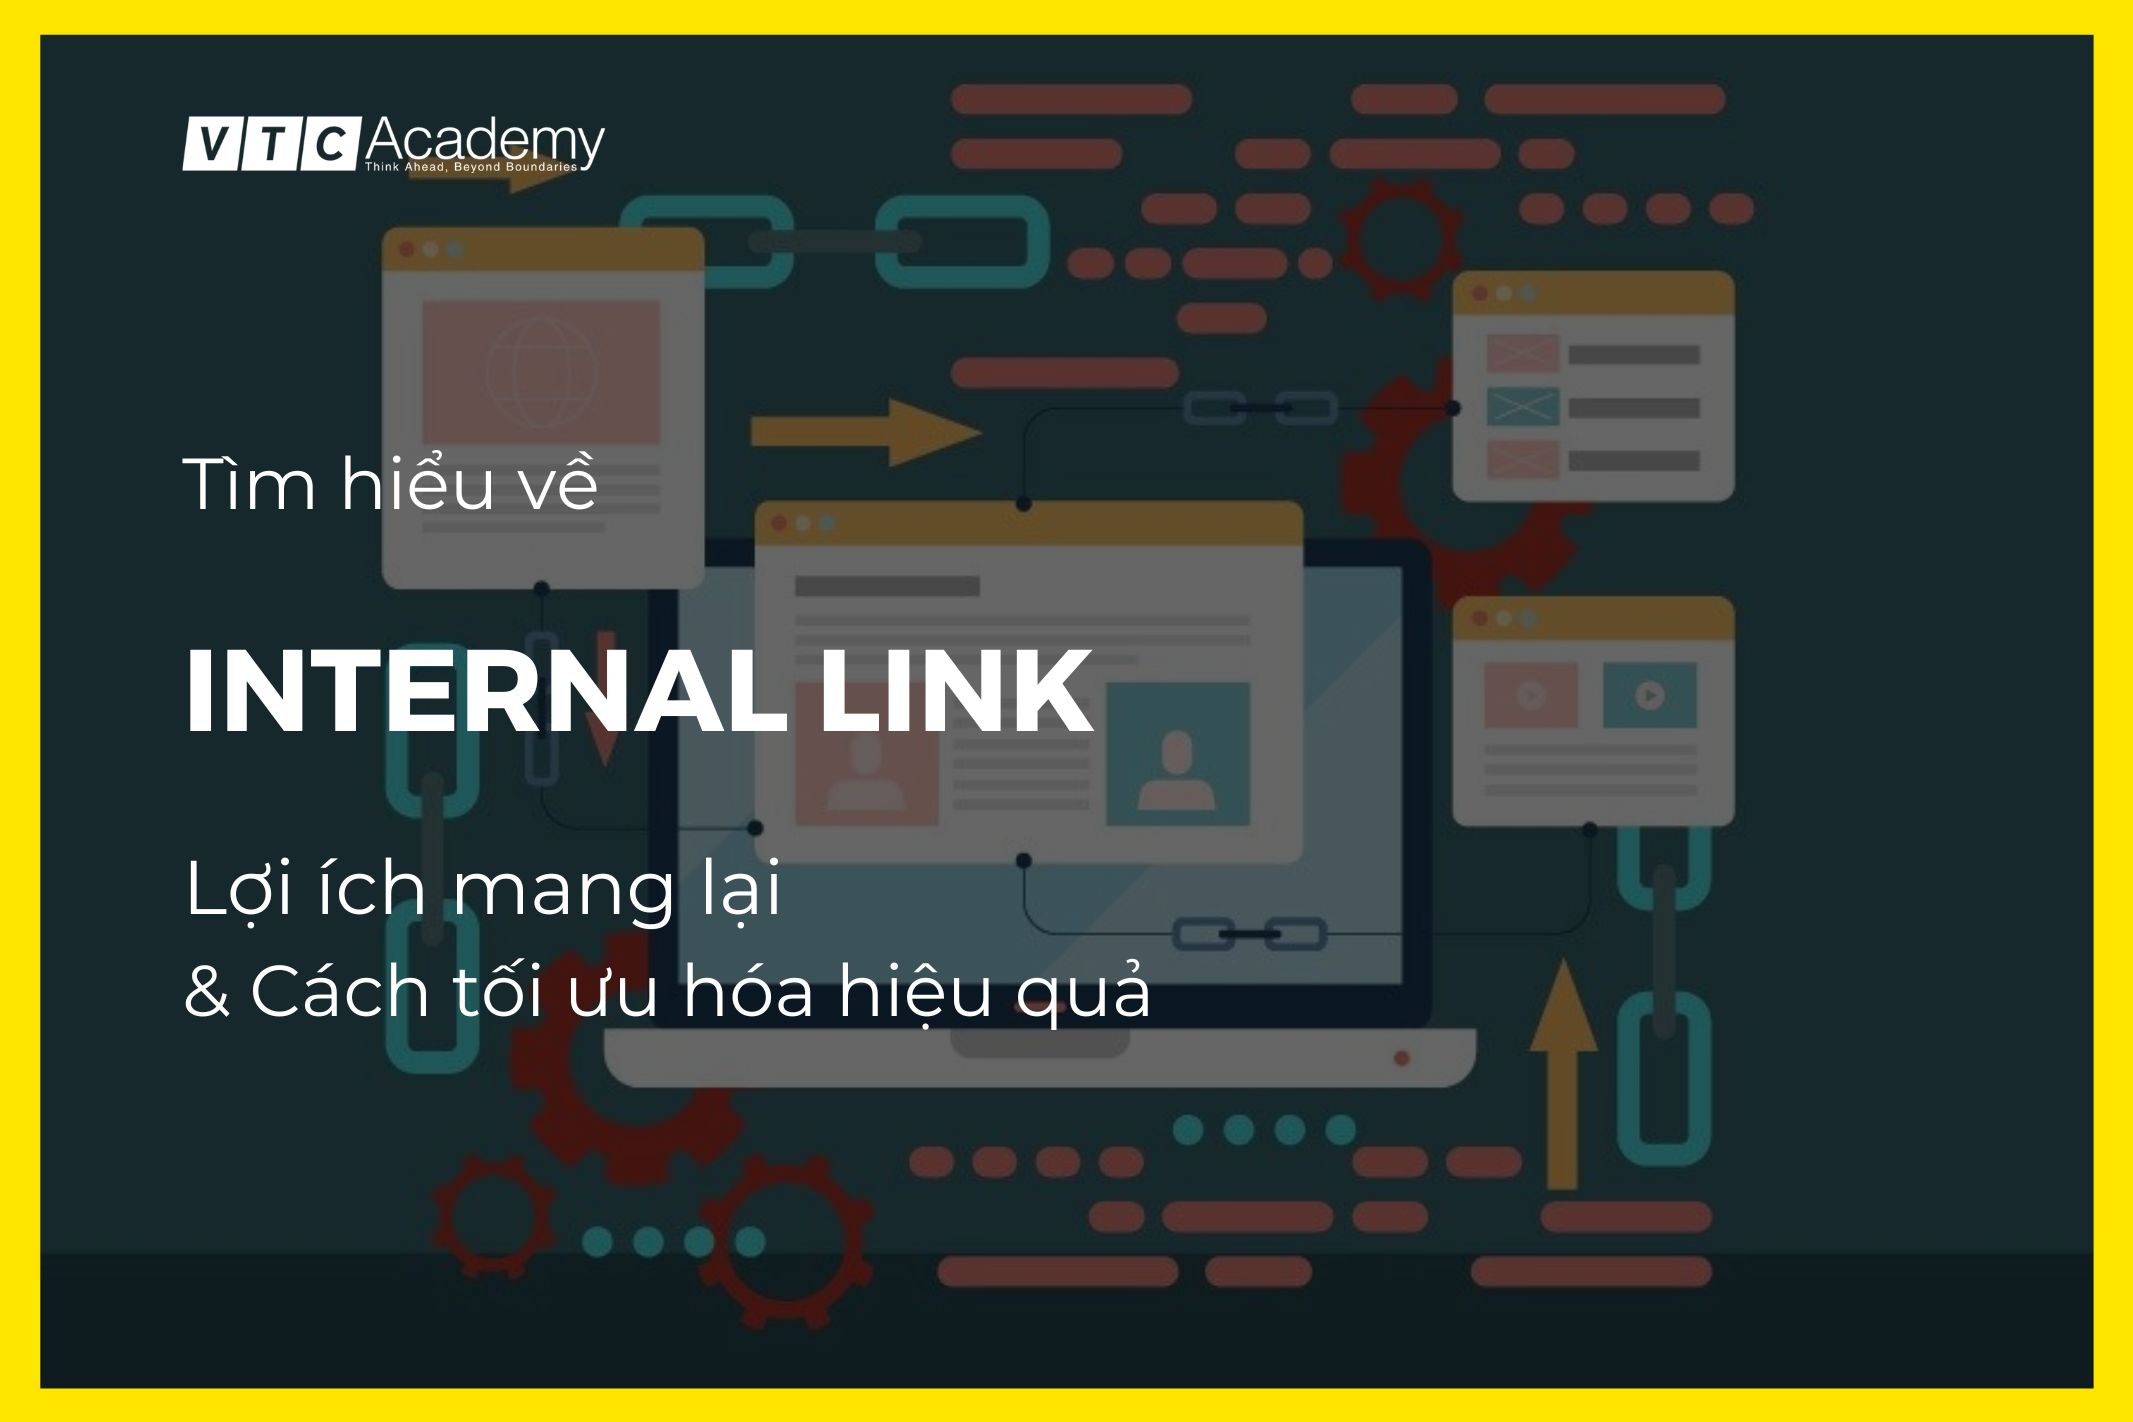 Internal Link là gì? Lợi ích của việc tạo Internal Link và cách tối ưu hóa Internal Link trong chiến lược SEO